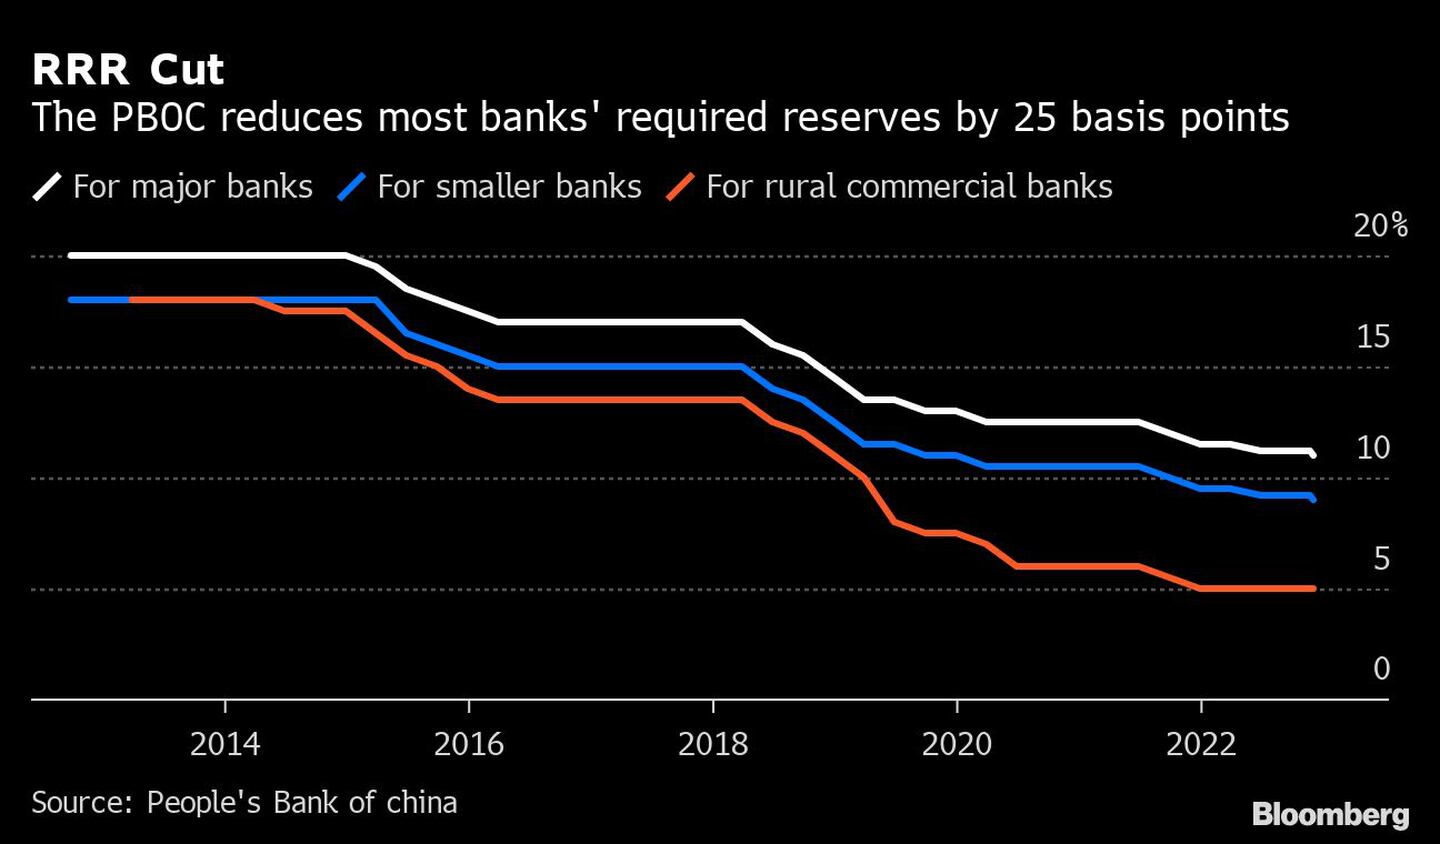  El PBOC reduce las reservas obligatorias de la mayoría de los bancos en 25 puntos básicosdfd